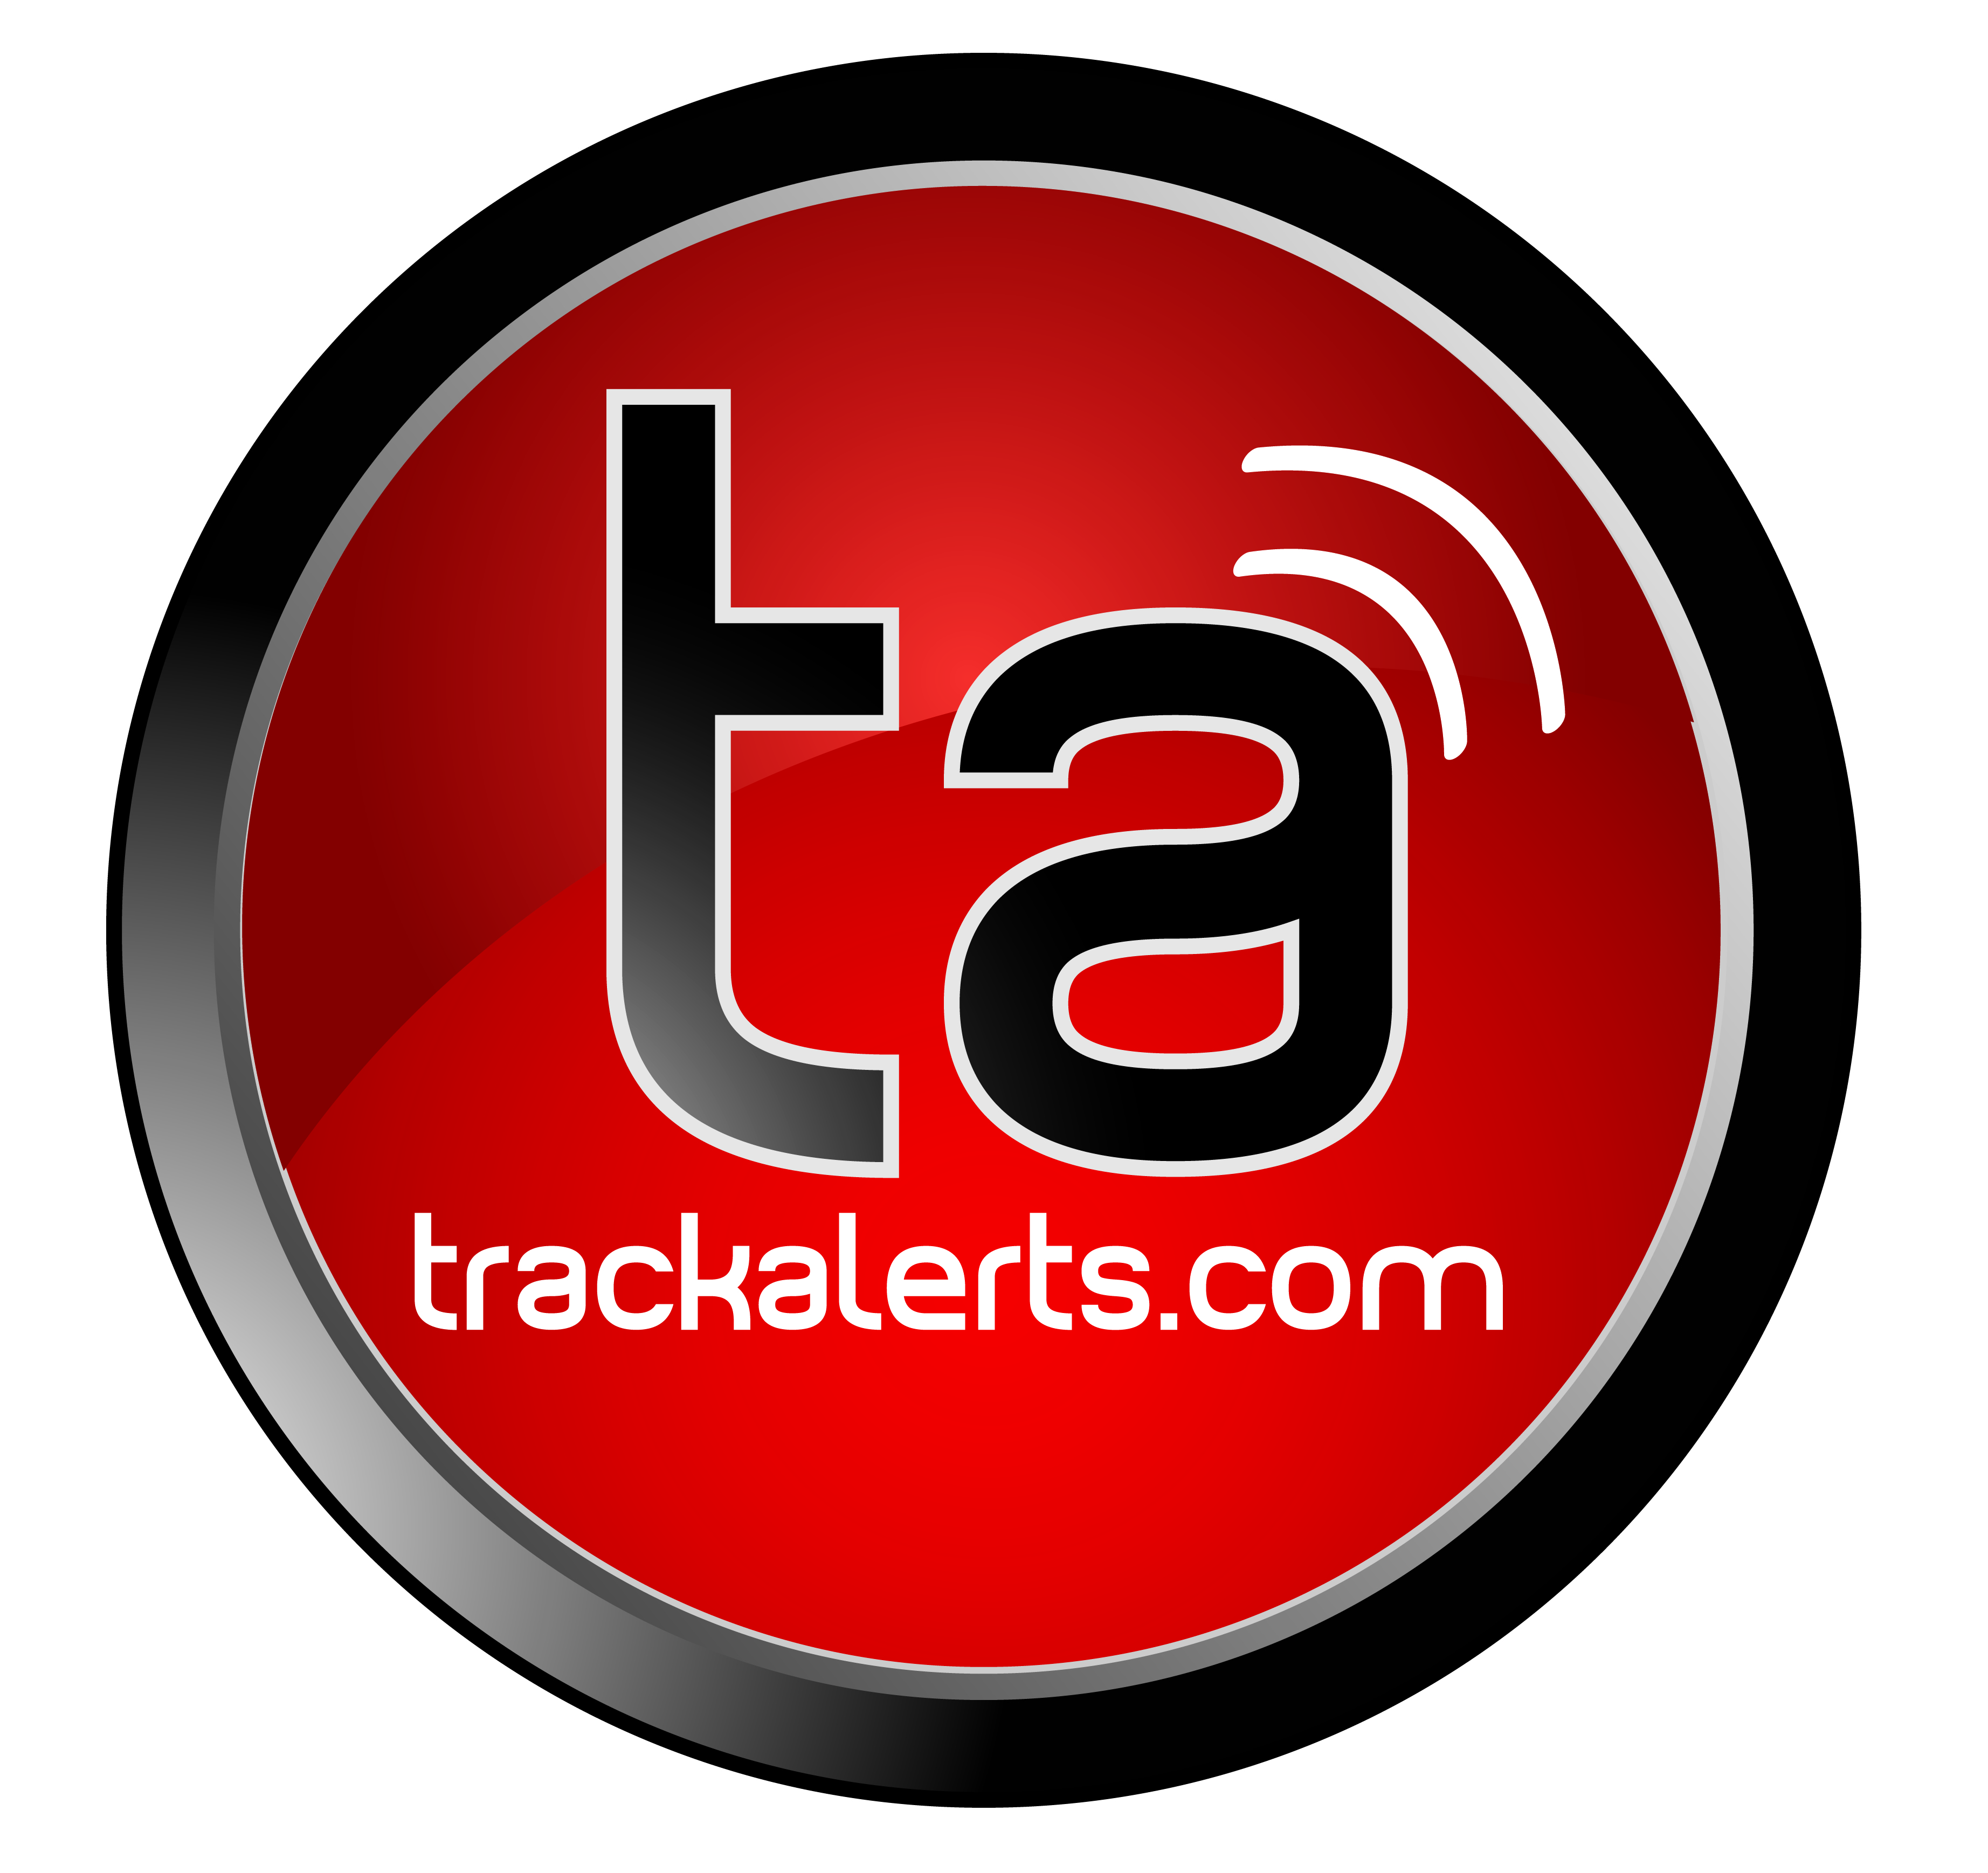 Contact Us - Trackalerts